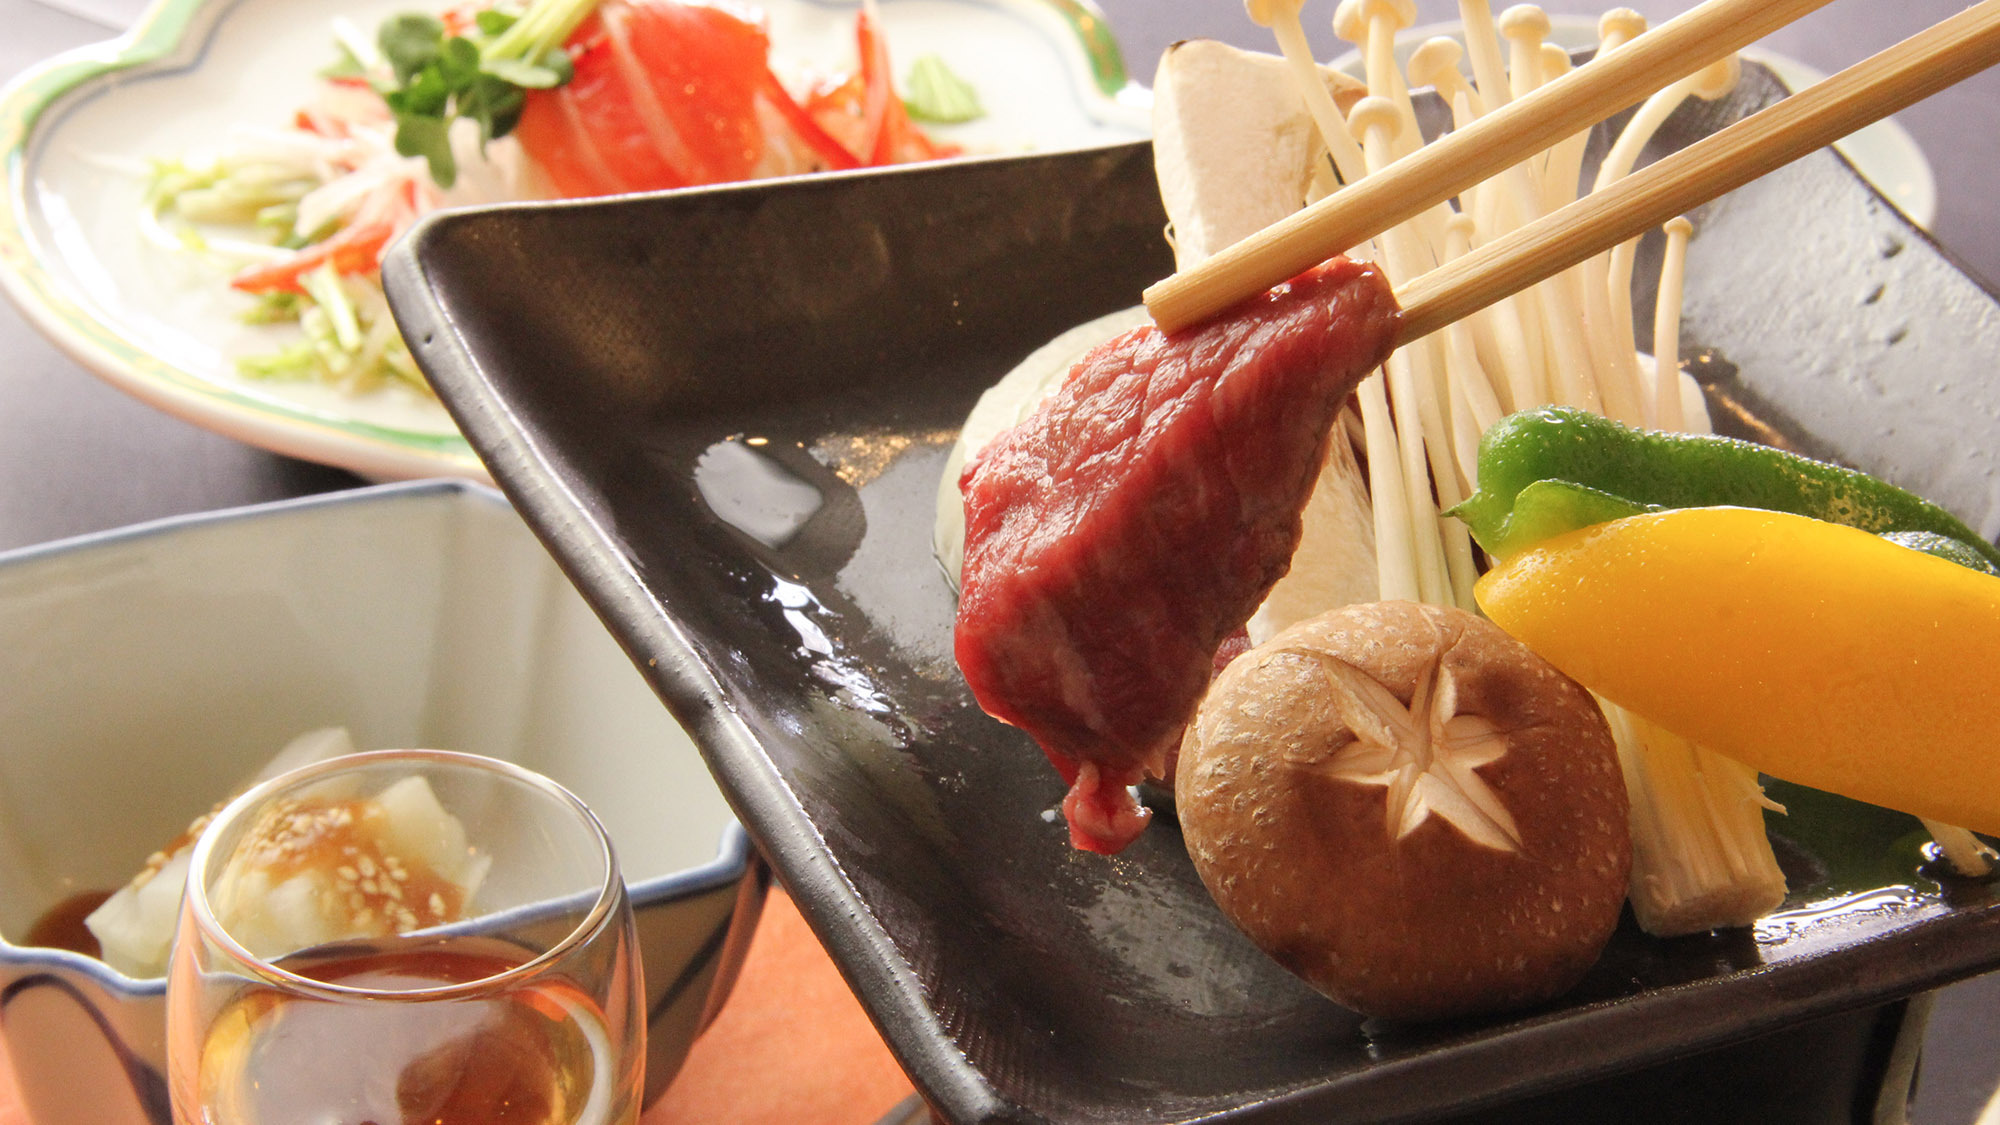 ・【お料理】大人気の信州牛とお野菜の蒸し陶板鍋、寒い季節にピッタリの温かさです